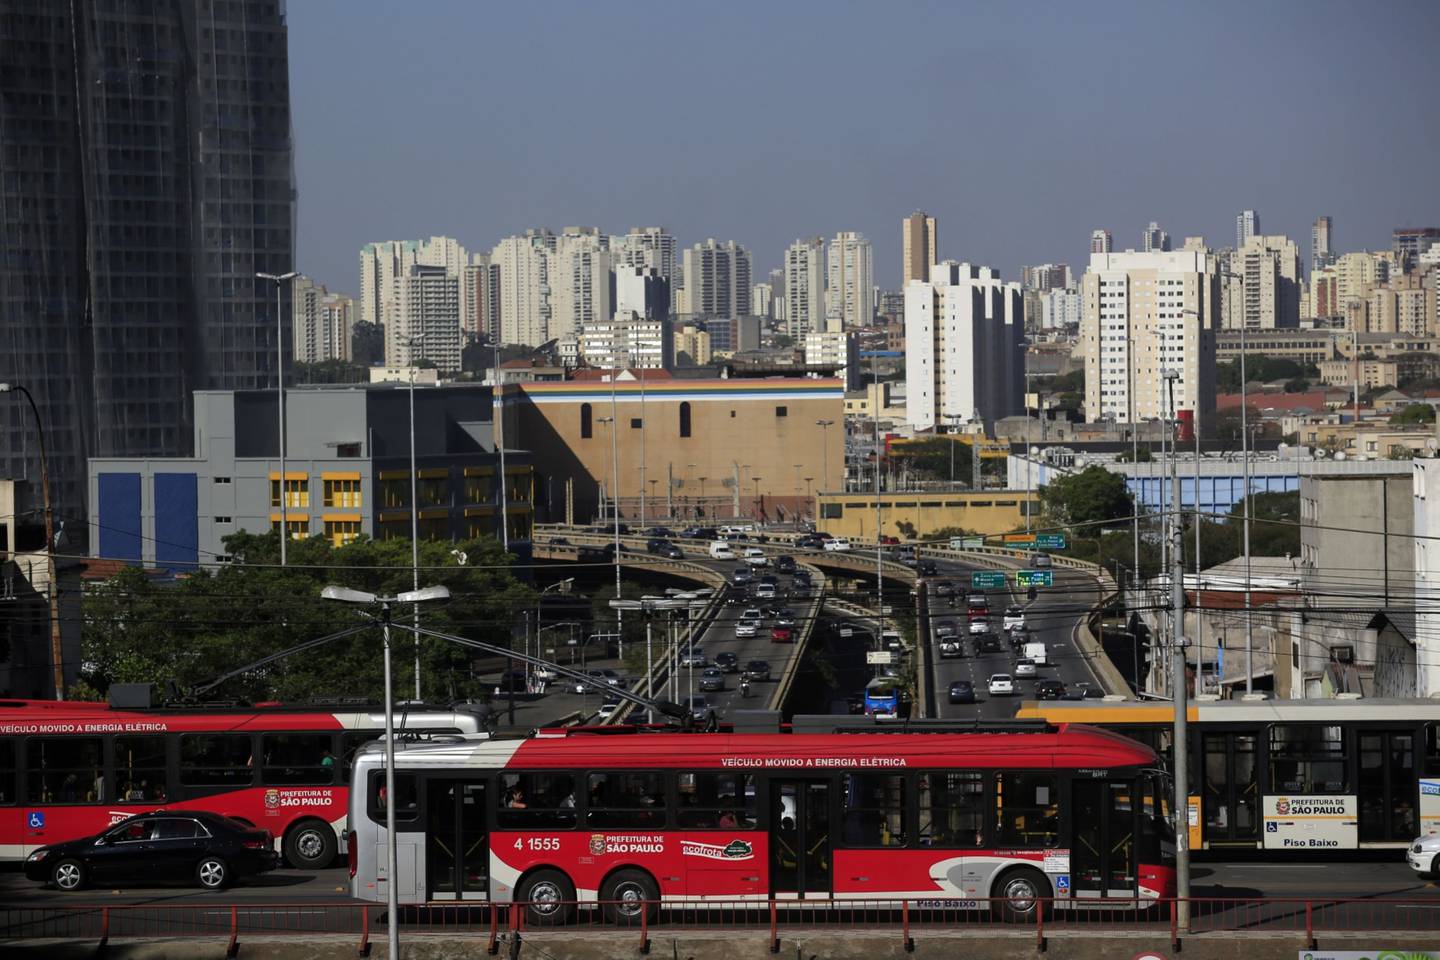 Los autobuses del metro viajan a lo largo de una calle en Sao, Paulo, Brasil, el miércoles 10 de septiembre de 2014.dfd